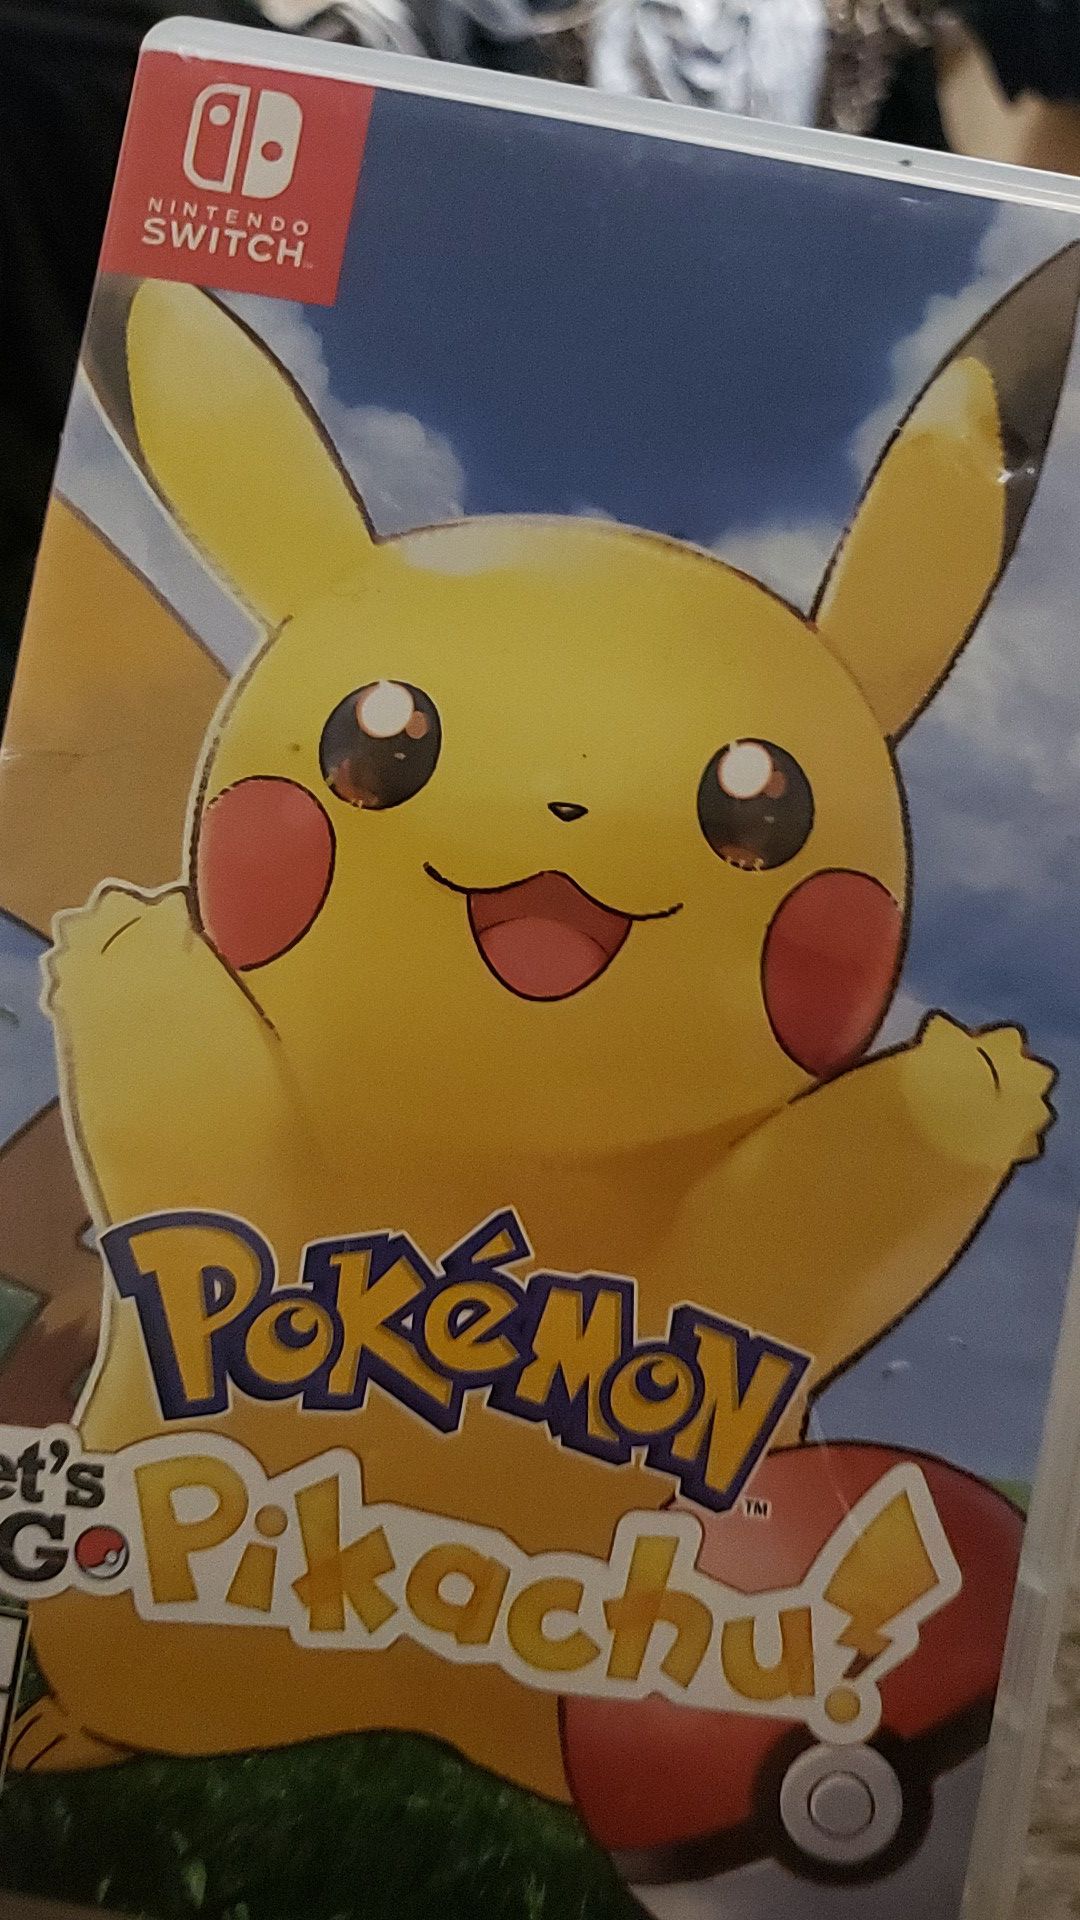 Let's go Pikachu, Pokémon game for switch